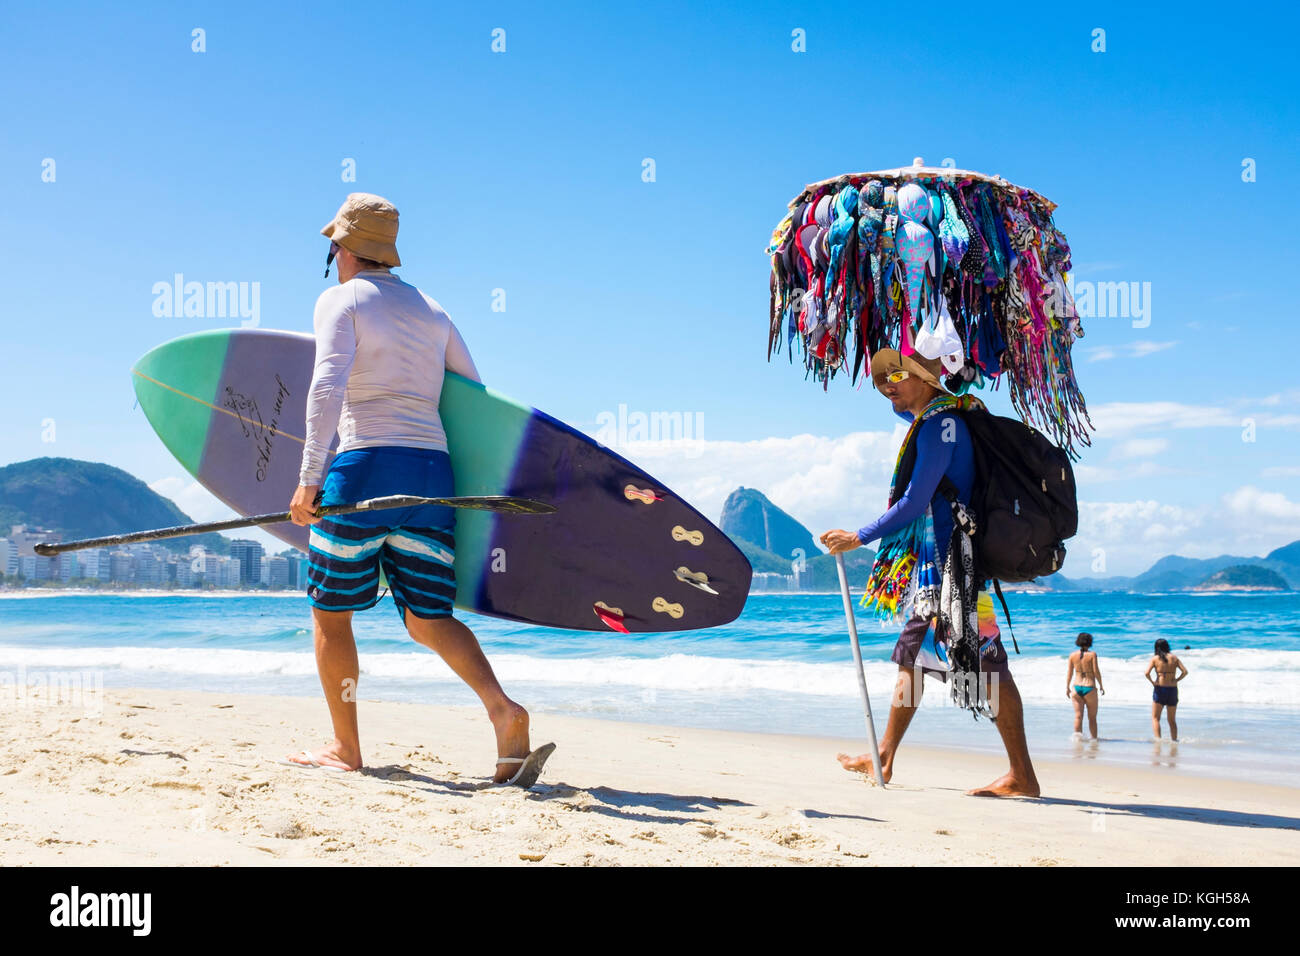 Rio de Janeiro - 21. März 2017: brasilianische Hersteller verkaufen Bikinis Spaziergänge neben einem Mann, der seine Stand-up Paddle surfboard Copacabana Strand. Stockfoto